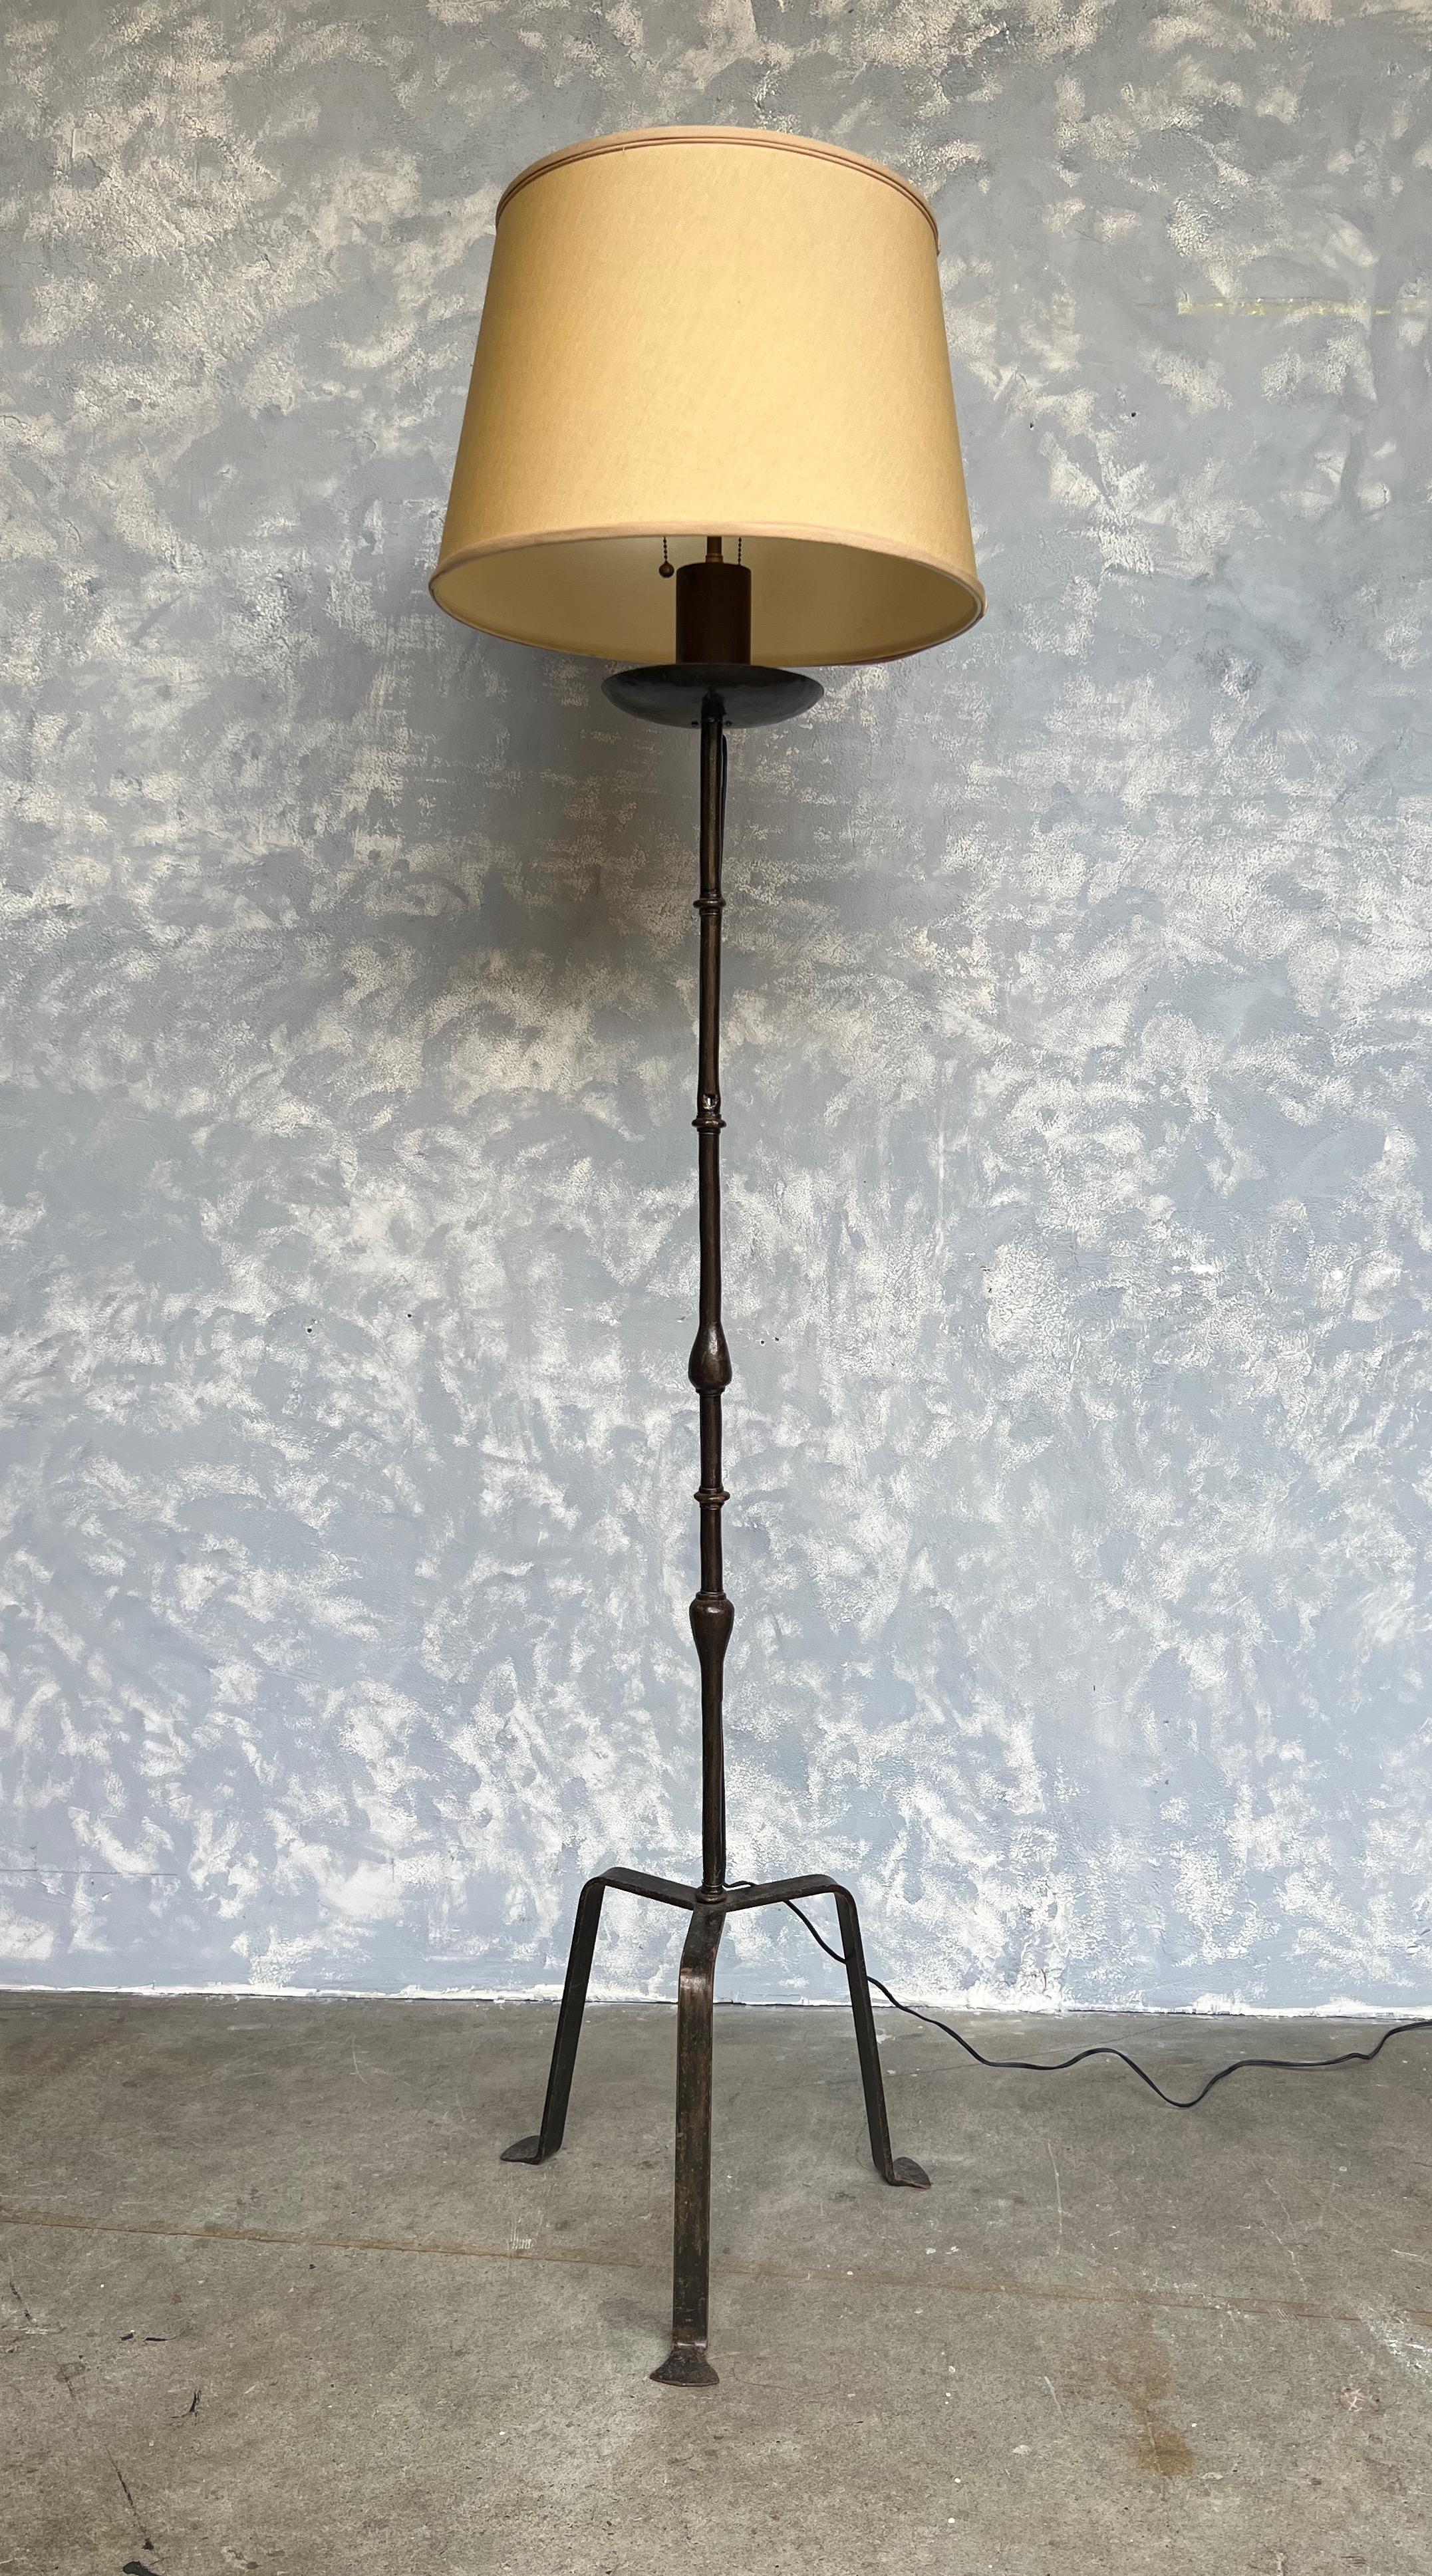 Cet exceptionnel lampadaire espagnol des années 1950 repose sur une base tripode allongée, mettant en valeur son remarquable design. Construite en fer massif, la lampe présente une riche patine de bronze profond avec une couche de laque transparente